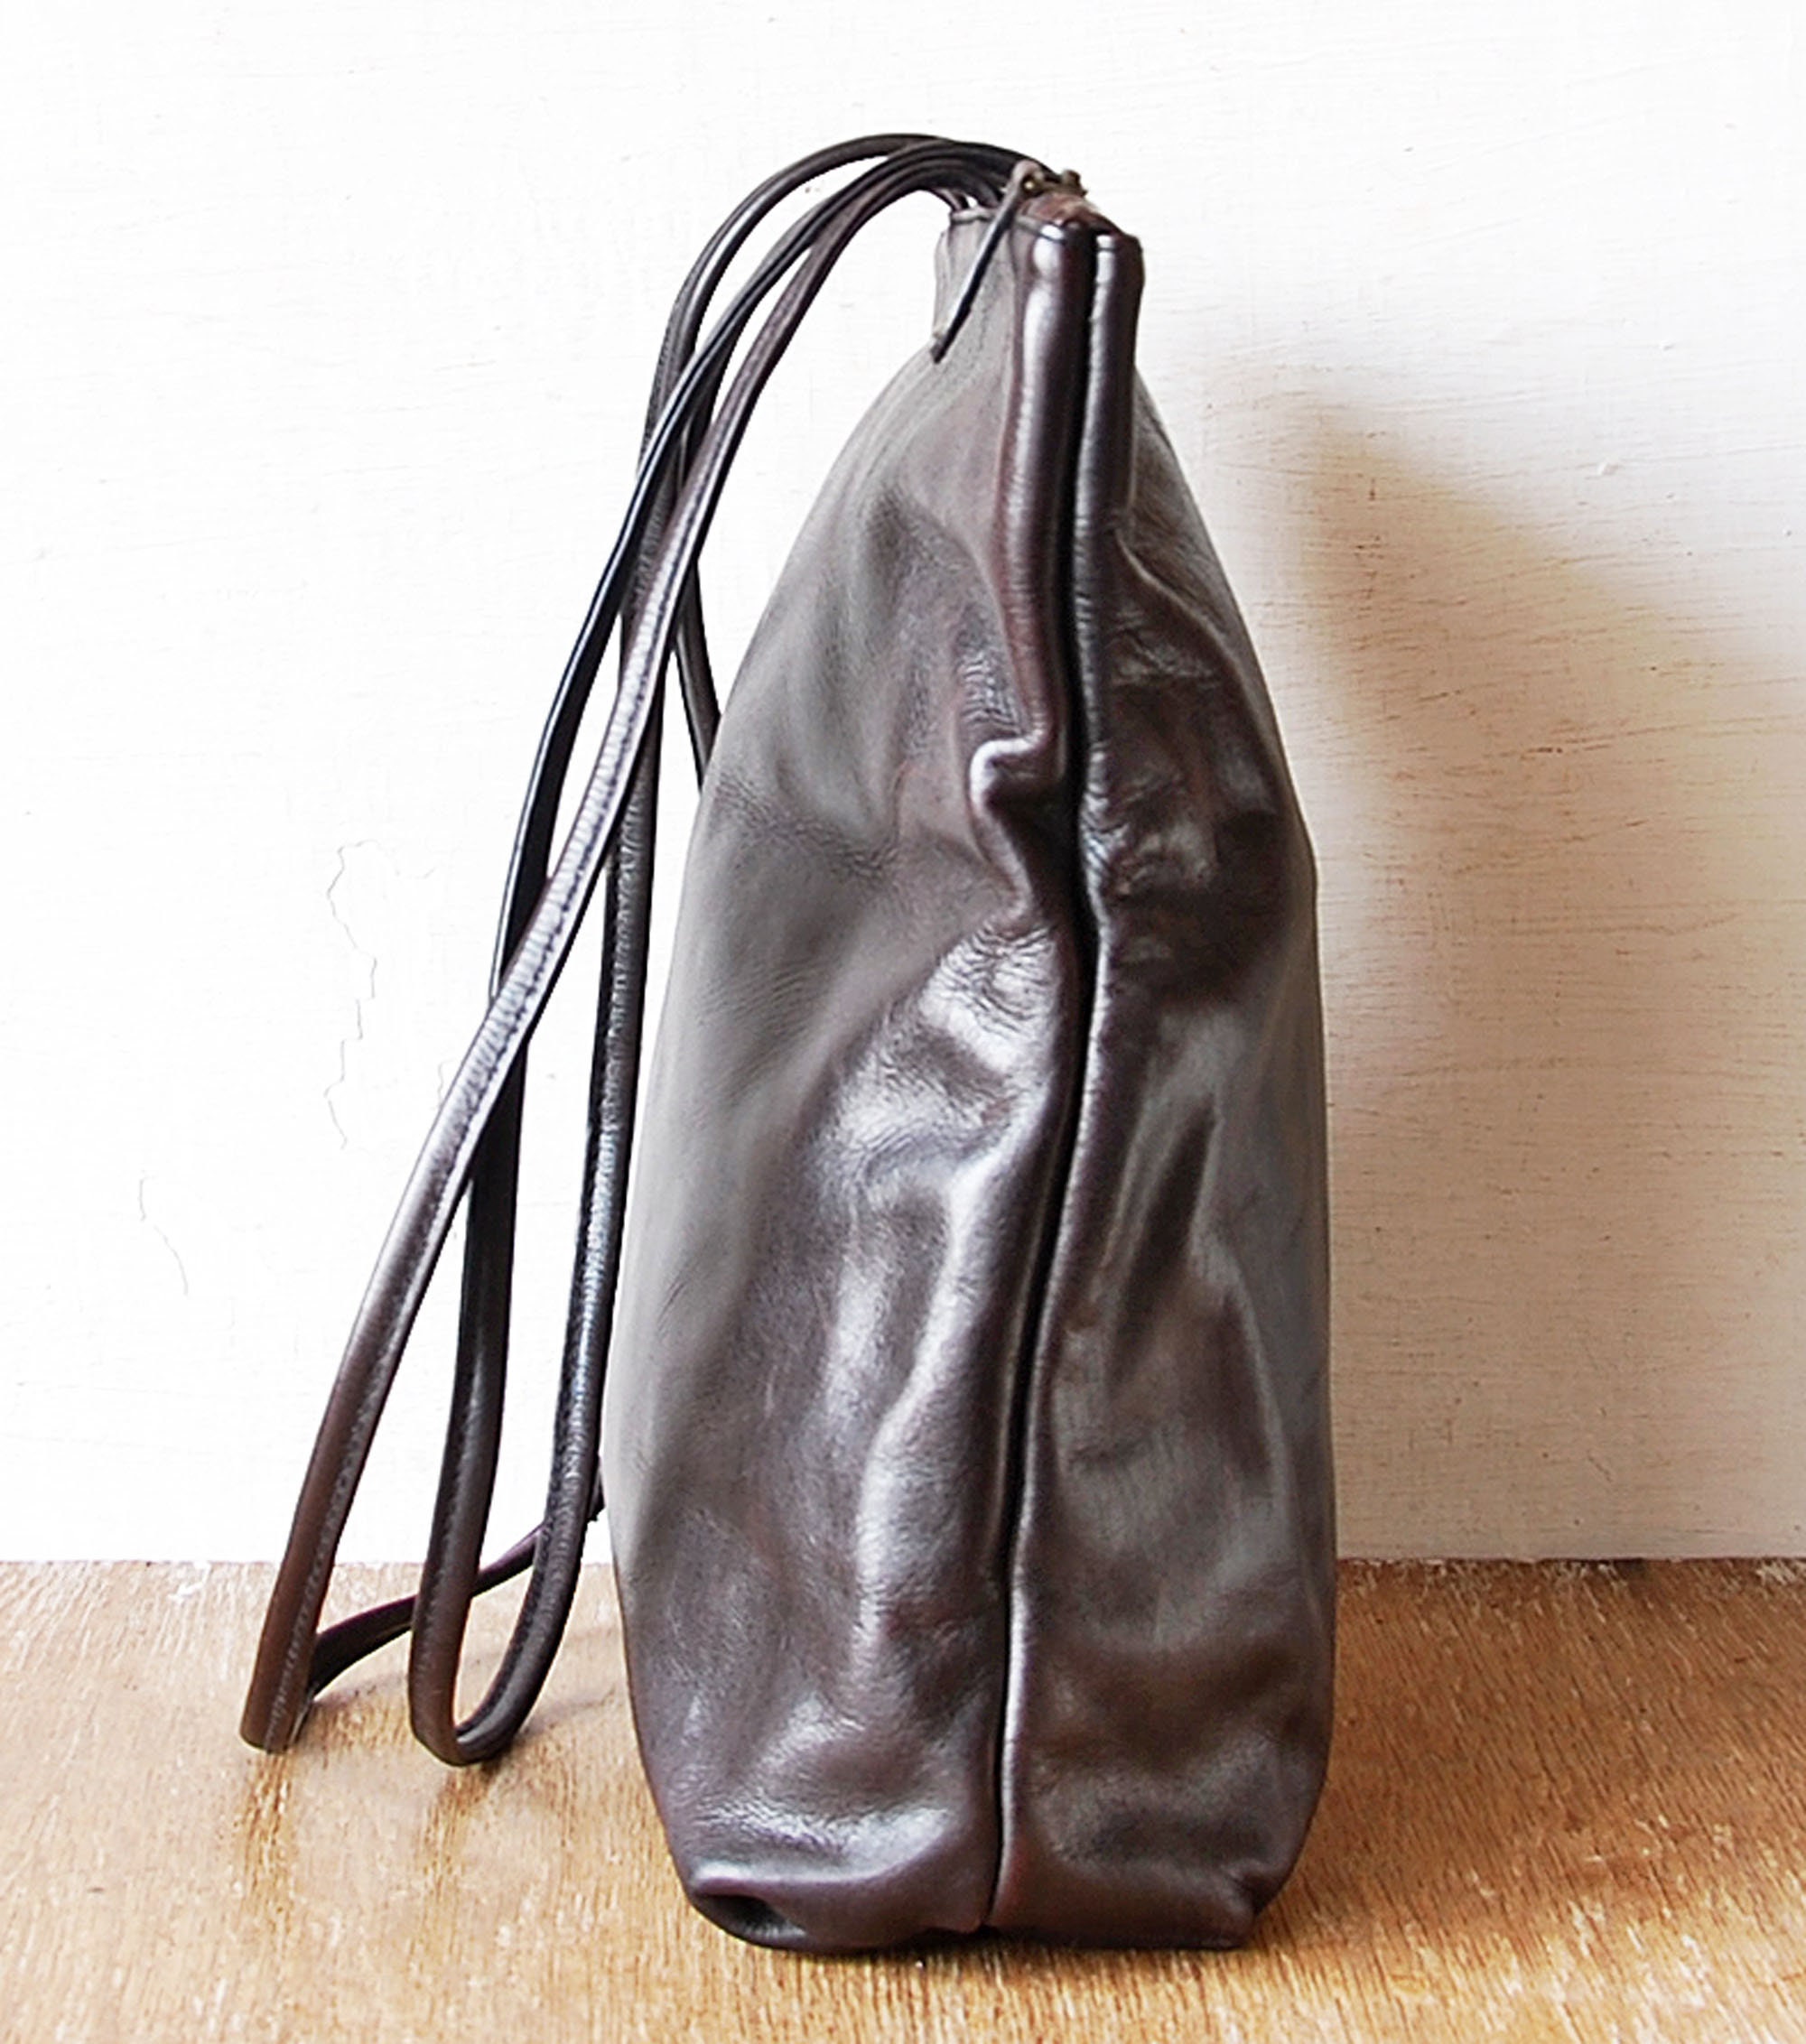 Large Brown Leather Hidesign Bag Vintage Shoulder Bag Top 